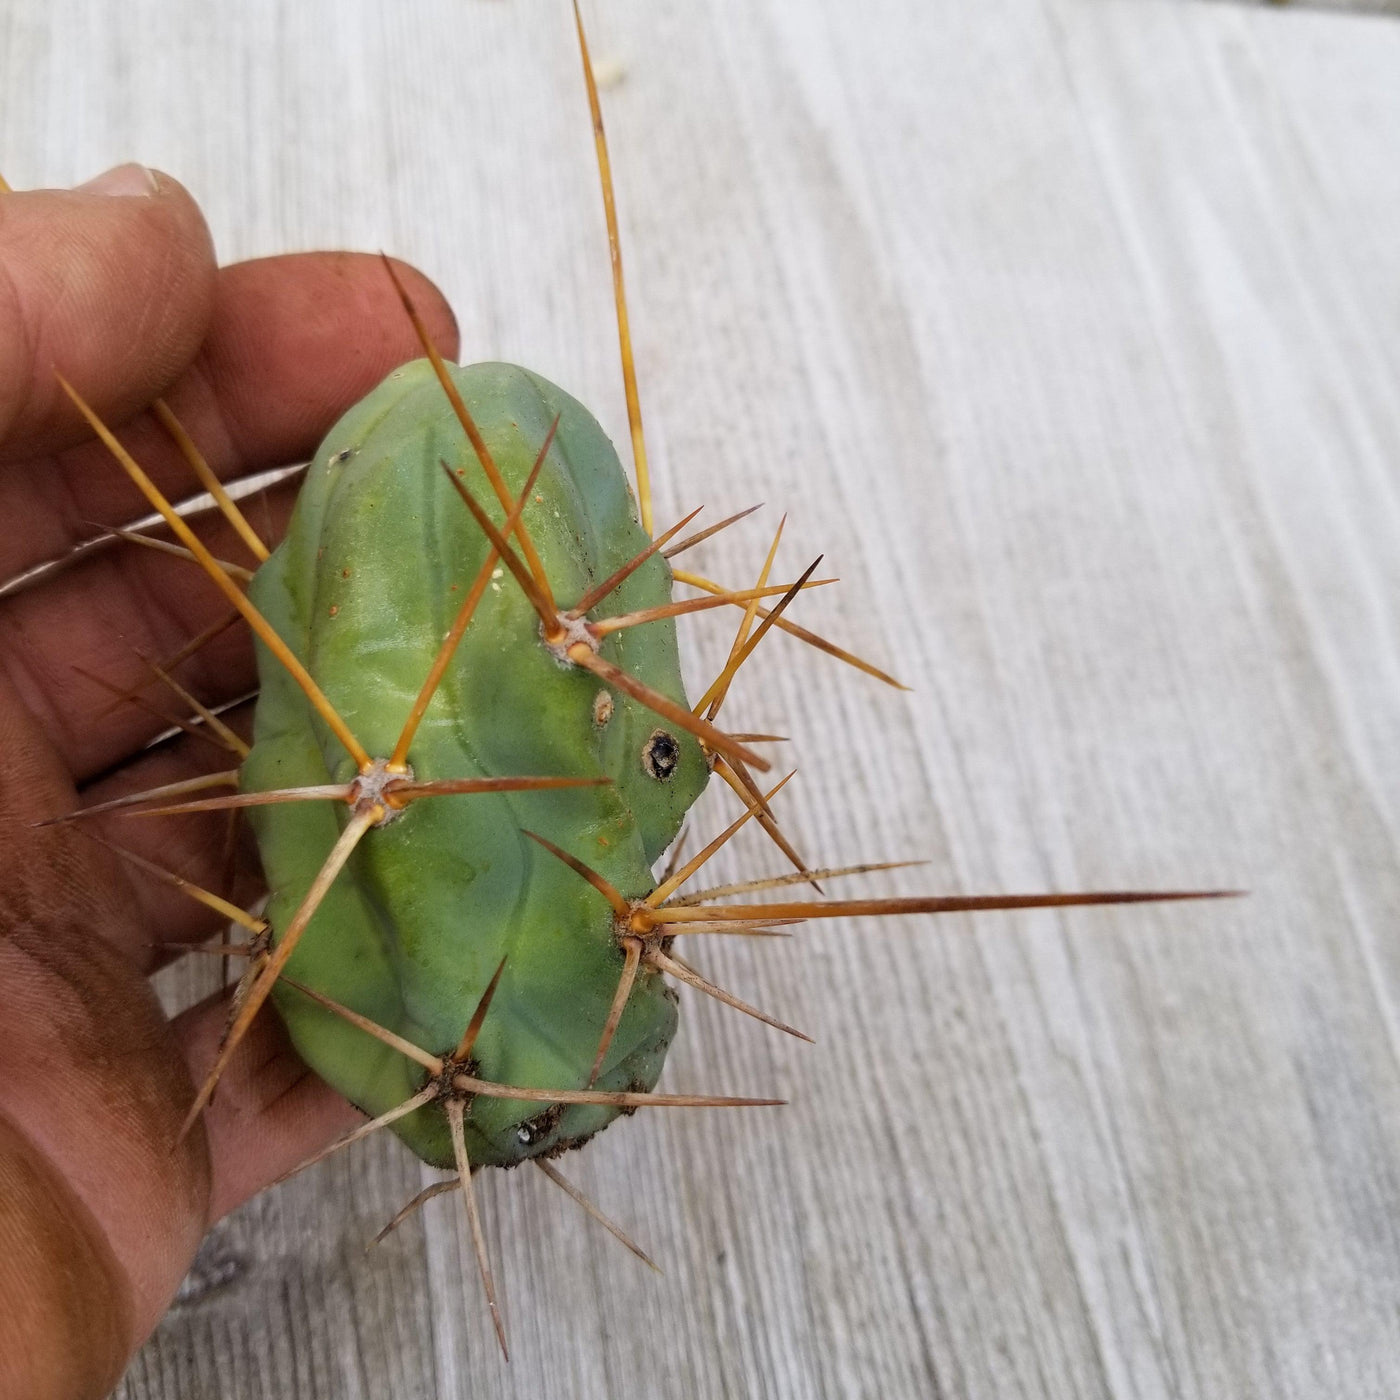 Unrooted Cutting Trichocereus bridgesii Monstrose Penis Cactus